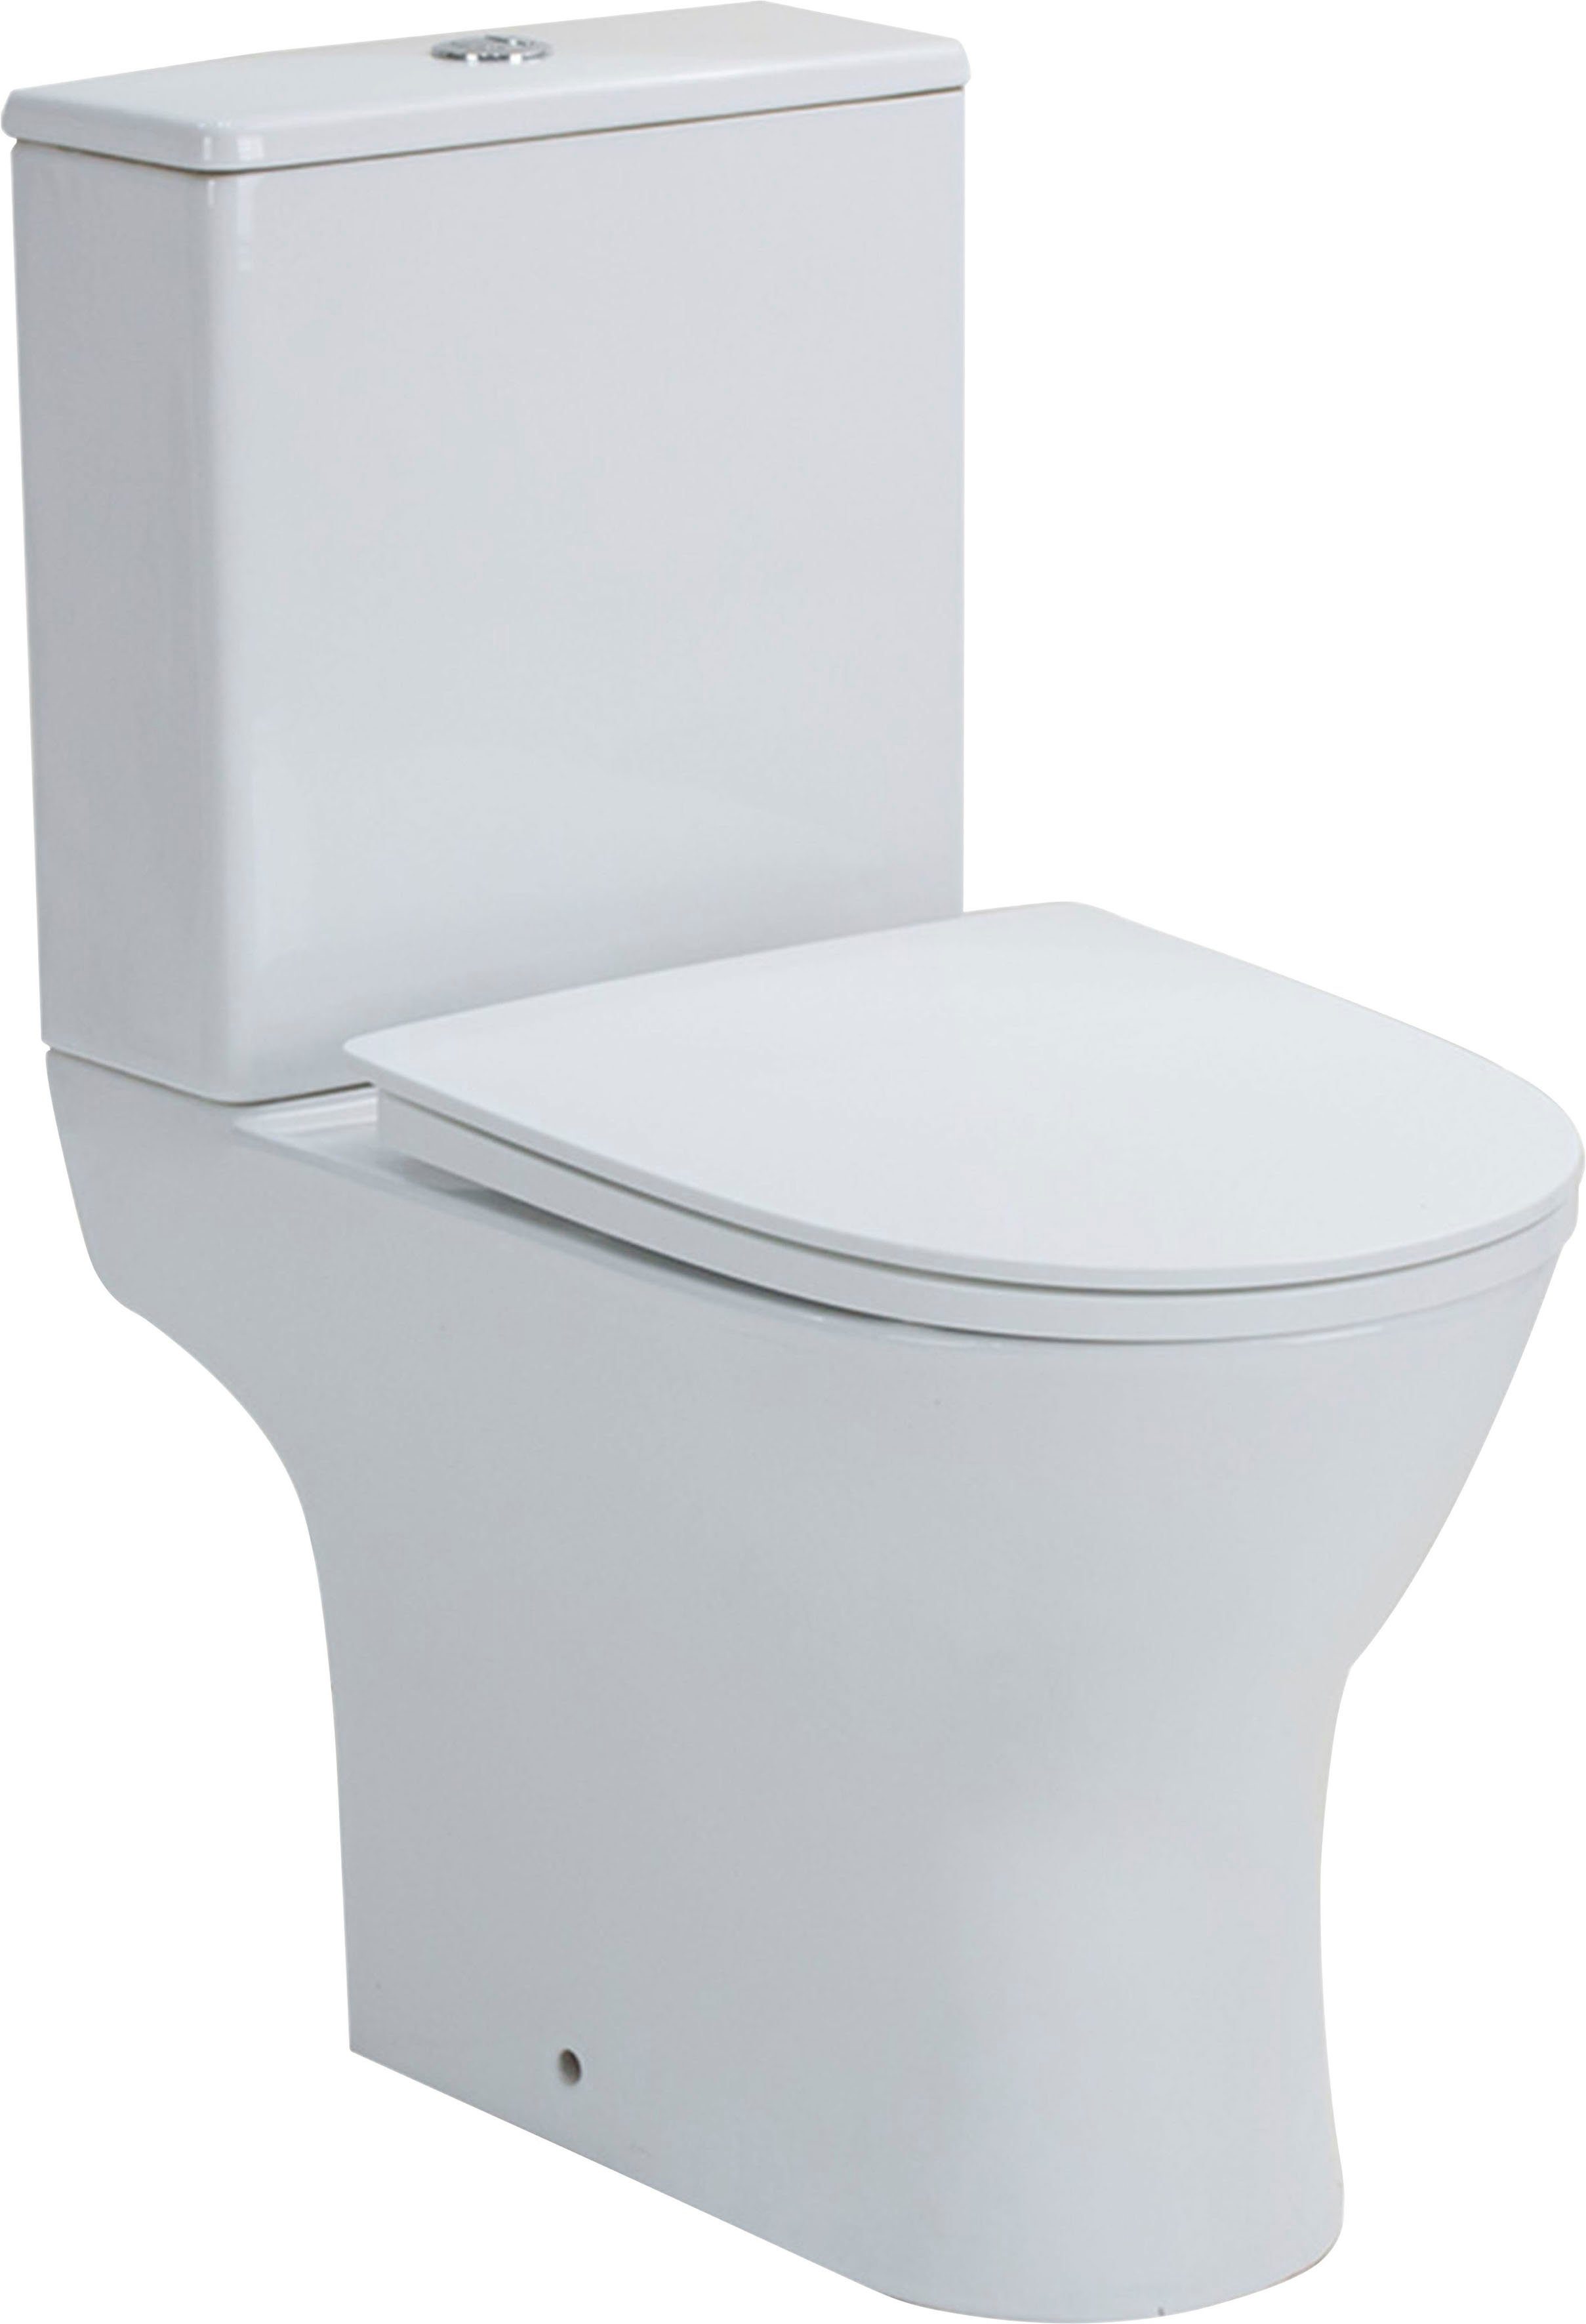 Vereg Tiefspül-WC Paros, bodenstehend, Abgang waagerecht, Set, Stand-WC  inkl. WC-Sitz slim und Spülkasten